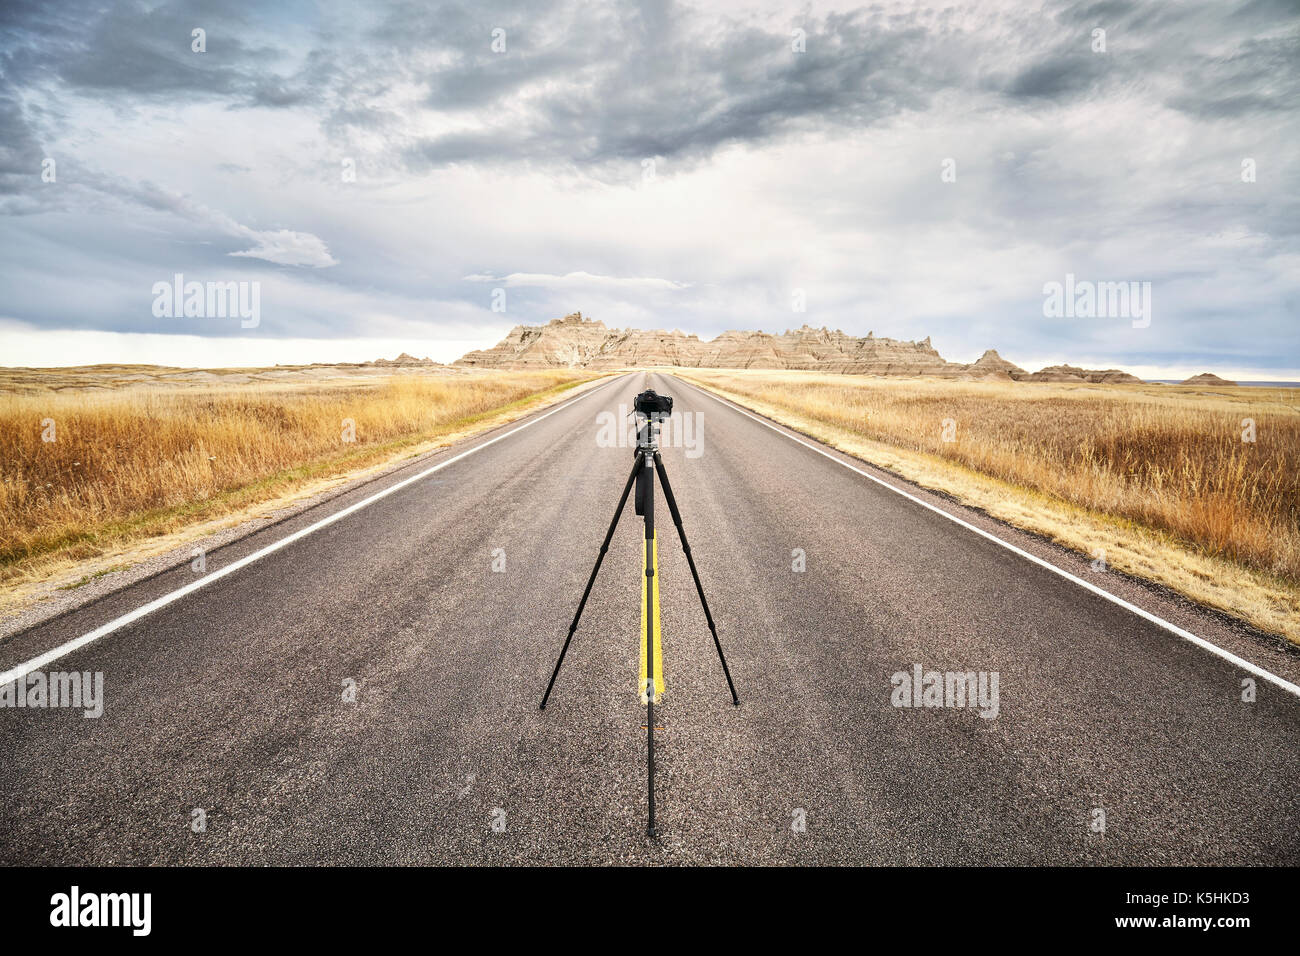 Appareil photo sur trépied photo professionnel sur une route vide au coucher du soleil, l'accent sur l'appareil photo de voyage ou de travail, concept, Badlands National Park, South Dakota, USA Banque D'Images